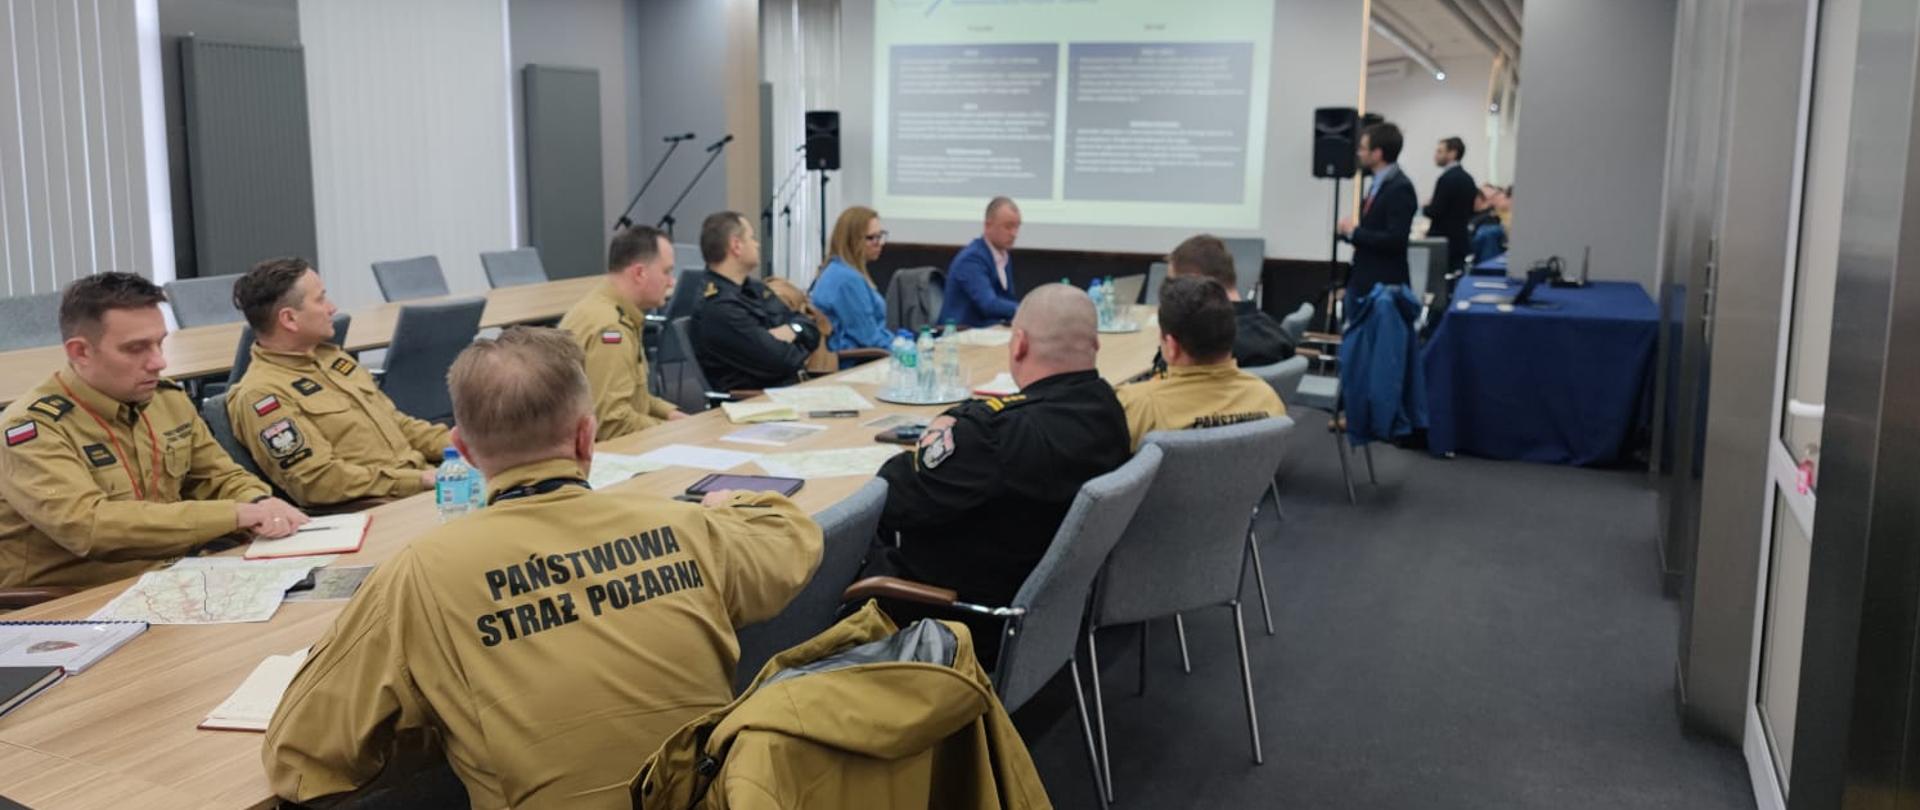 Uczestnicy spotkania siedzący przy stole. Ośmiu mężczyzn w mundurach Państwowej Straży Pożarnej. Jedna osoba stoi i prezentuje slajd na ekranie. 